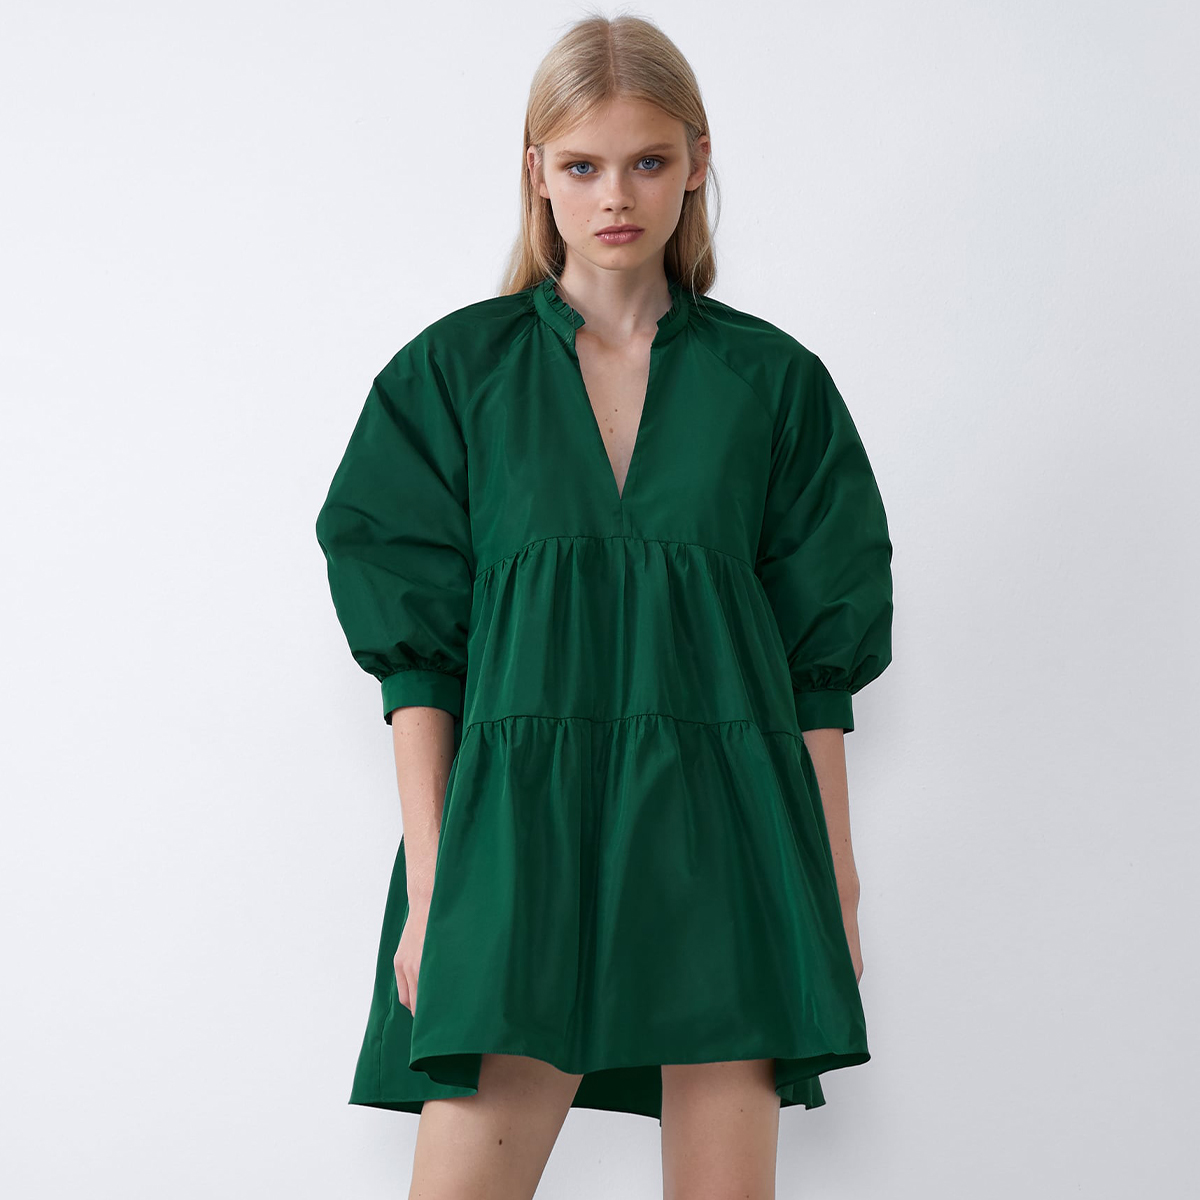 zara woman green dress